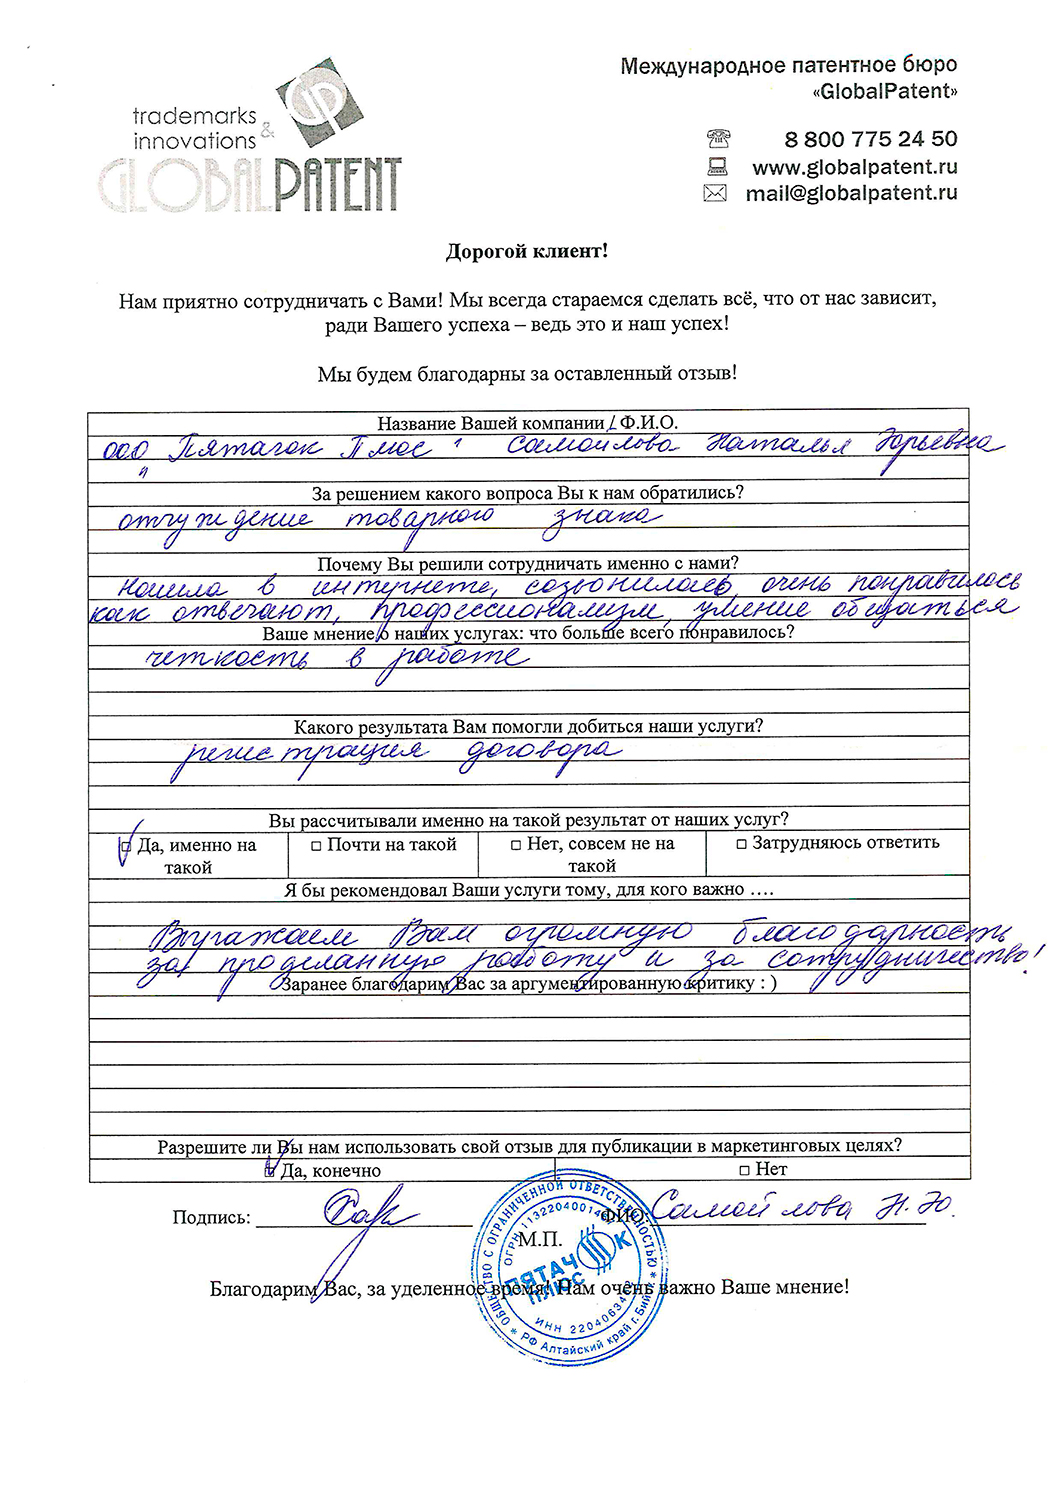 патентное бюро россии